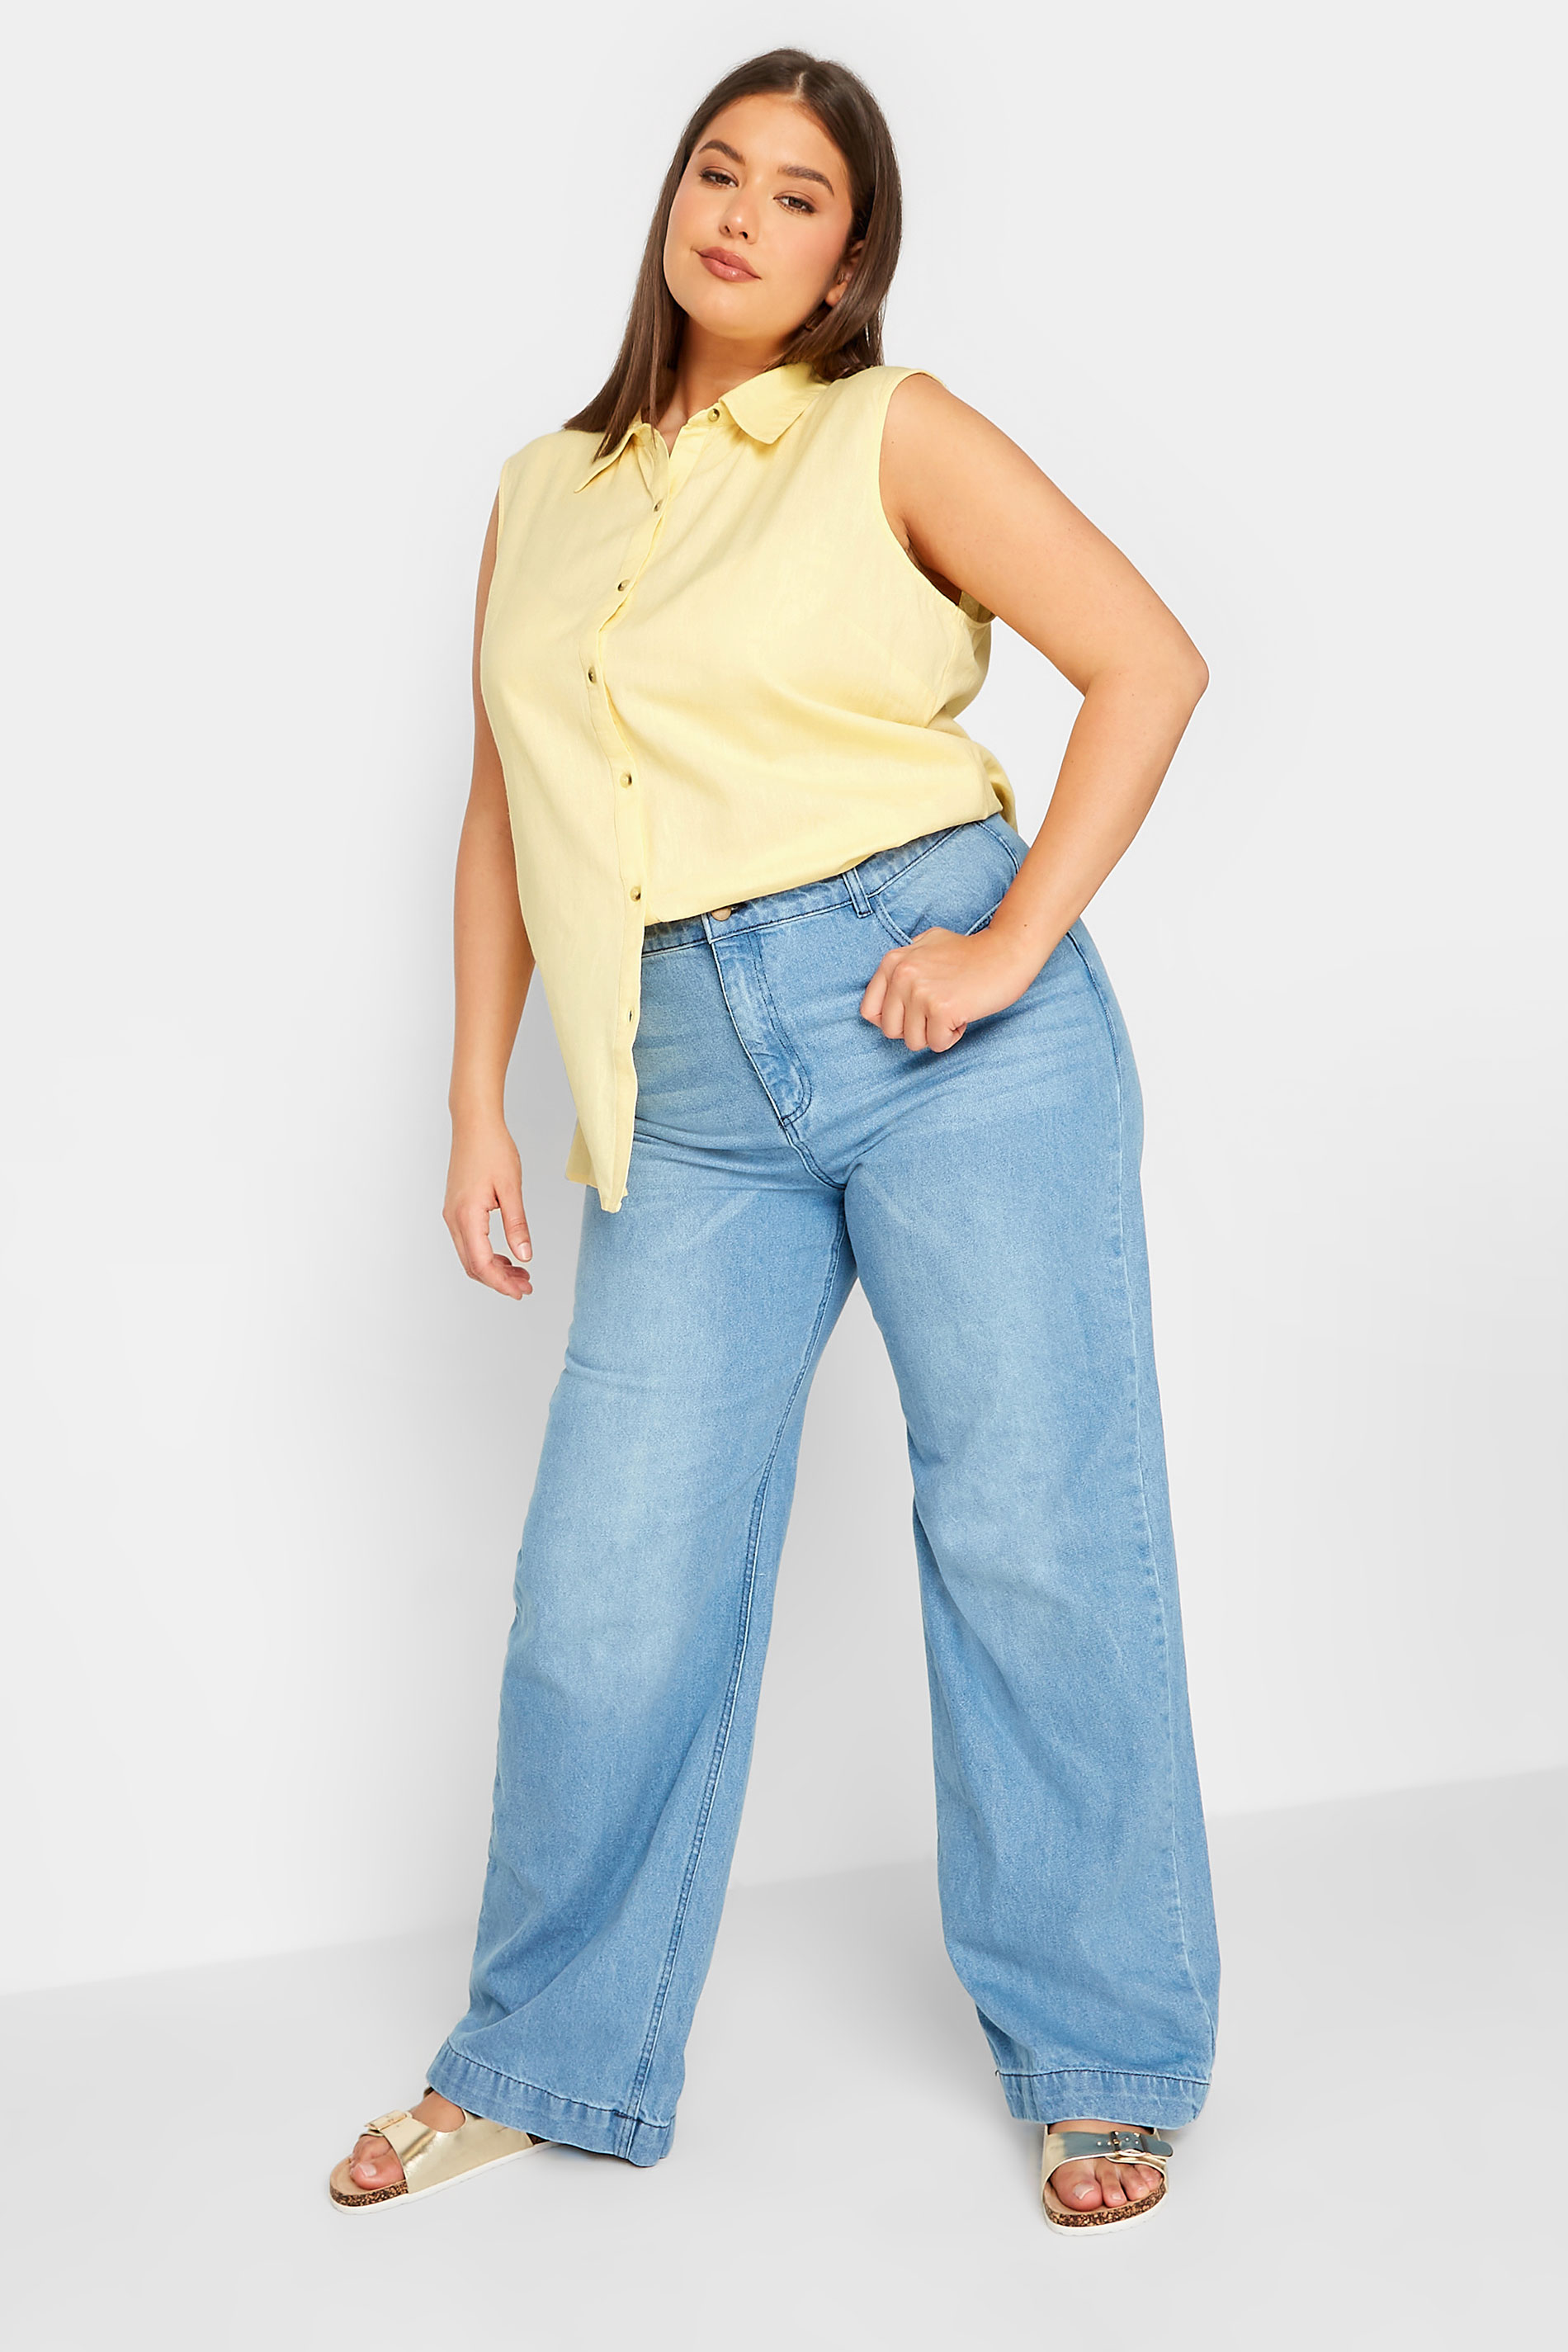 LTS Tall Women's Yellow Sleeveless Linen Blend Shirt | Long Tall Sally  2